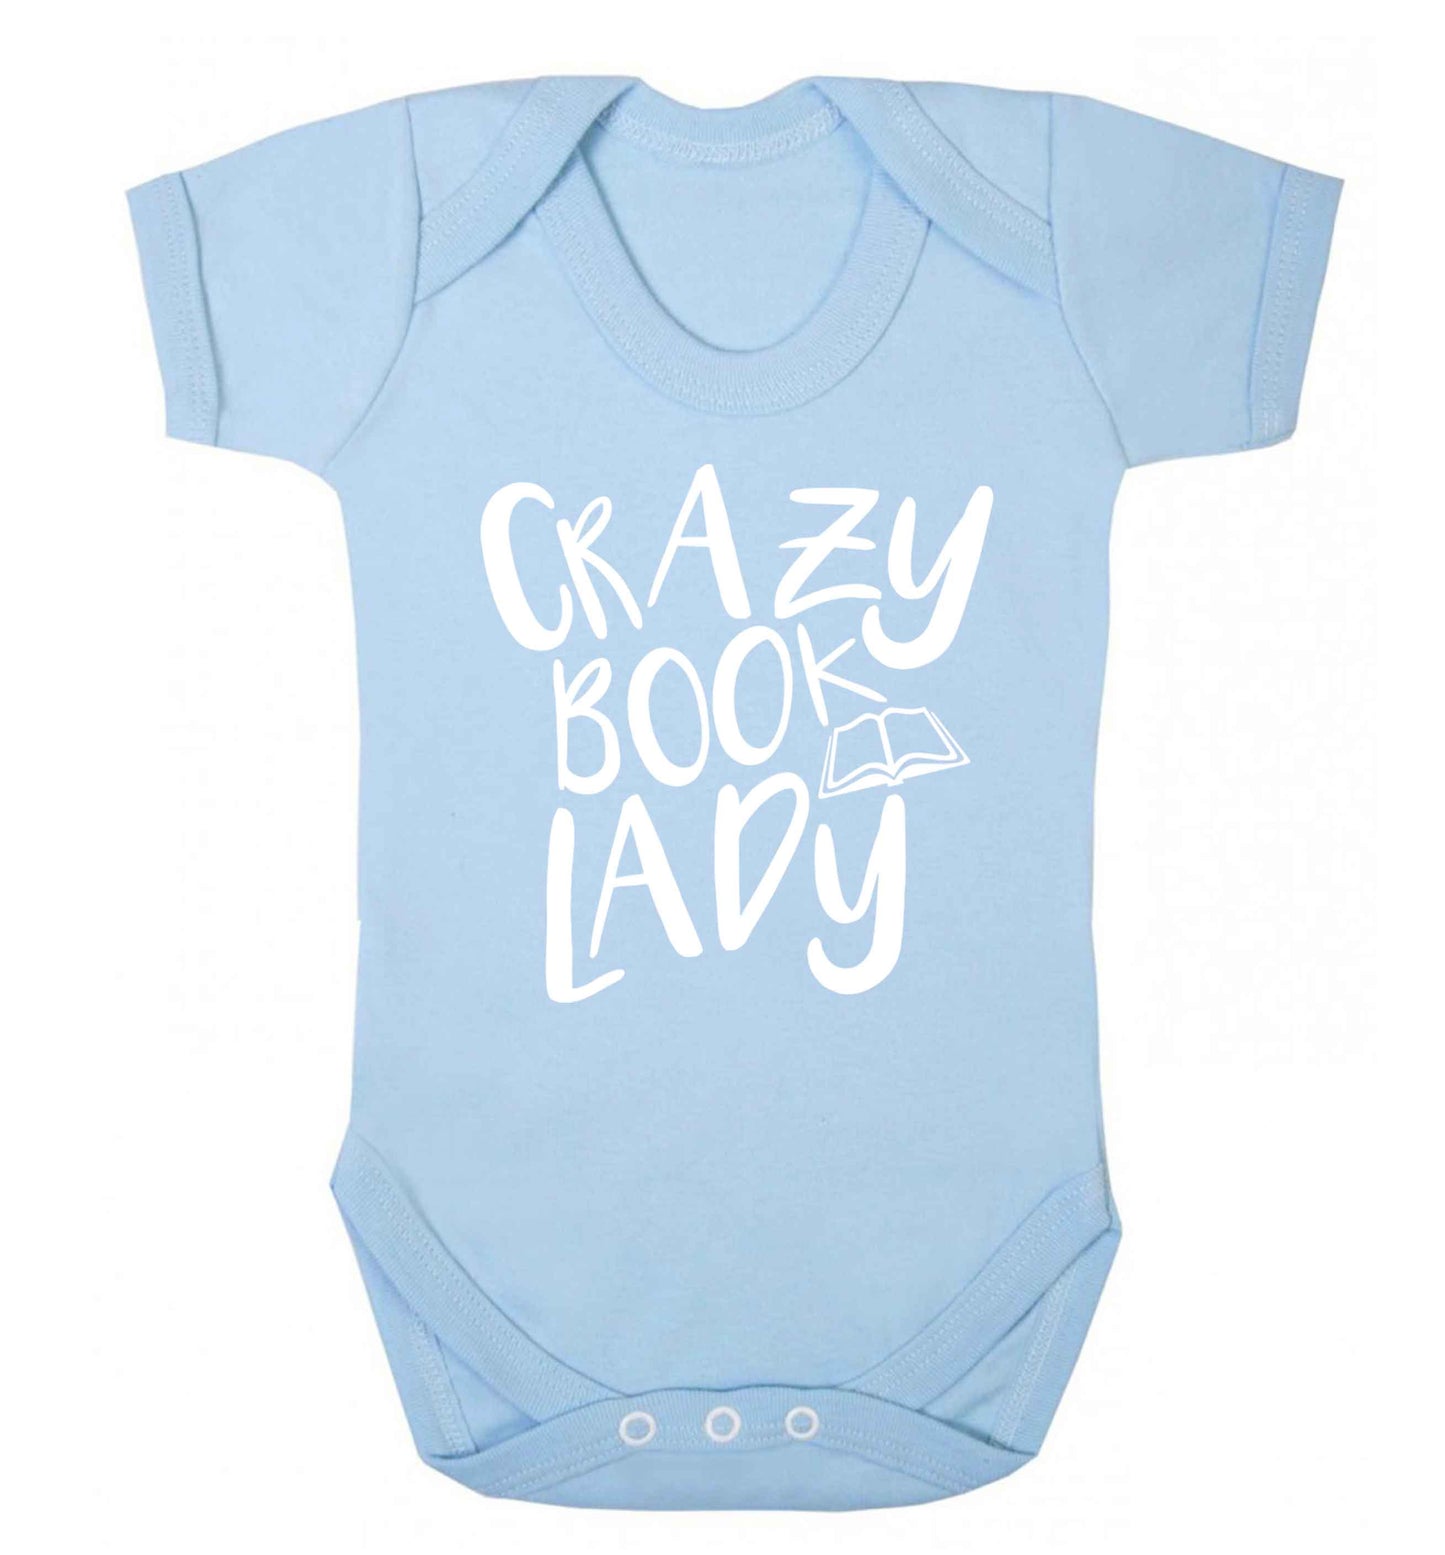 Crazy book lady Baby Vest pale blue 18-24 months